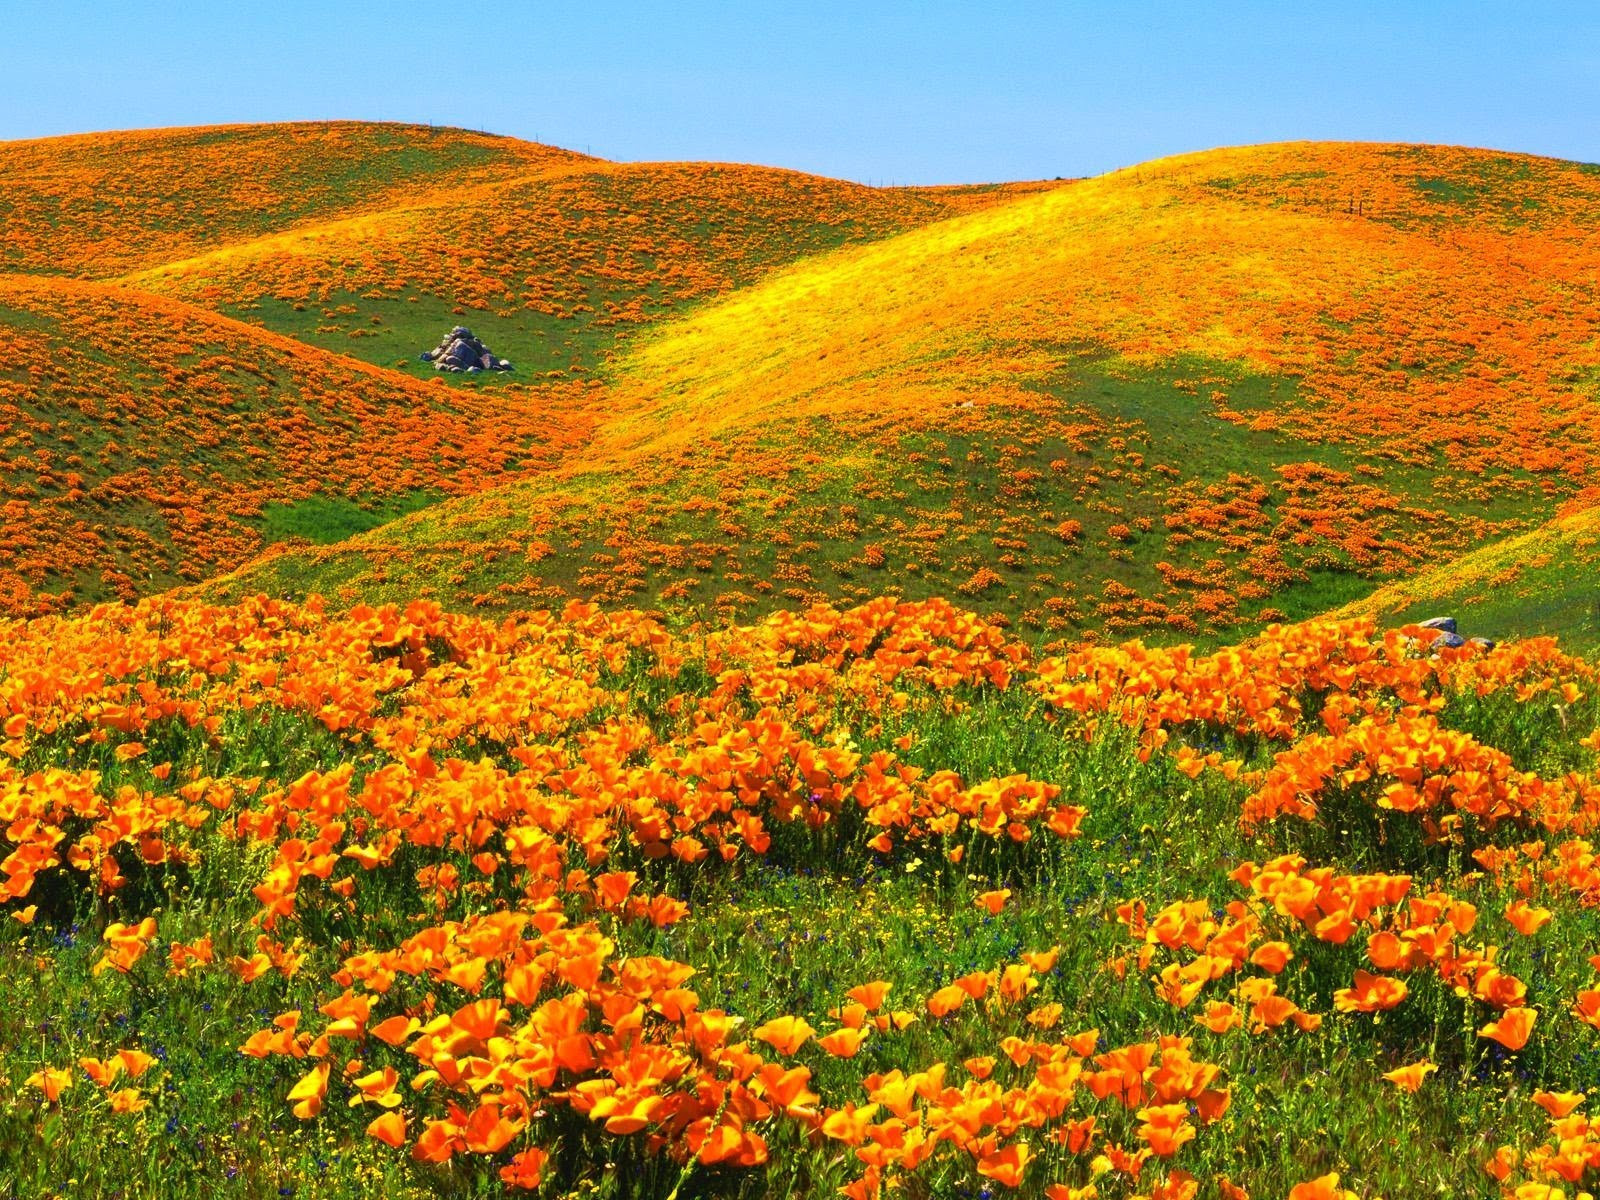 California-Poppies-deedeeflower-19543734-1600-1200.jpg